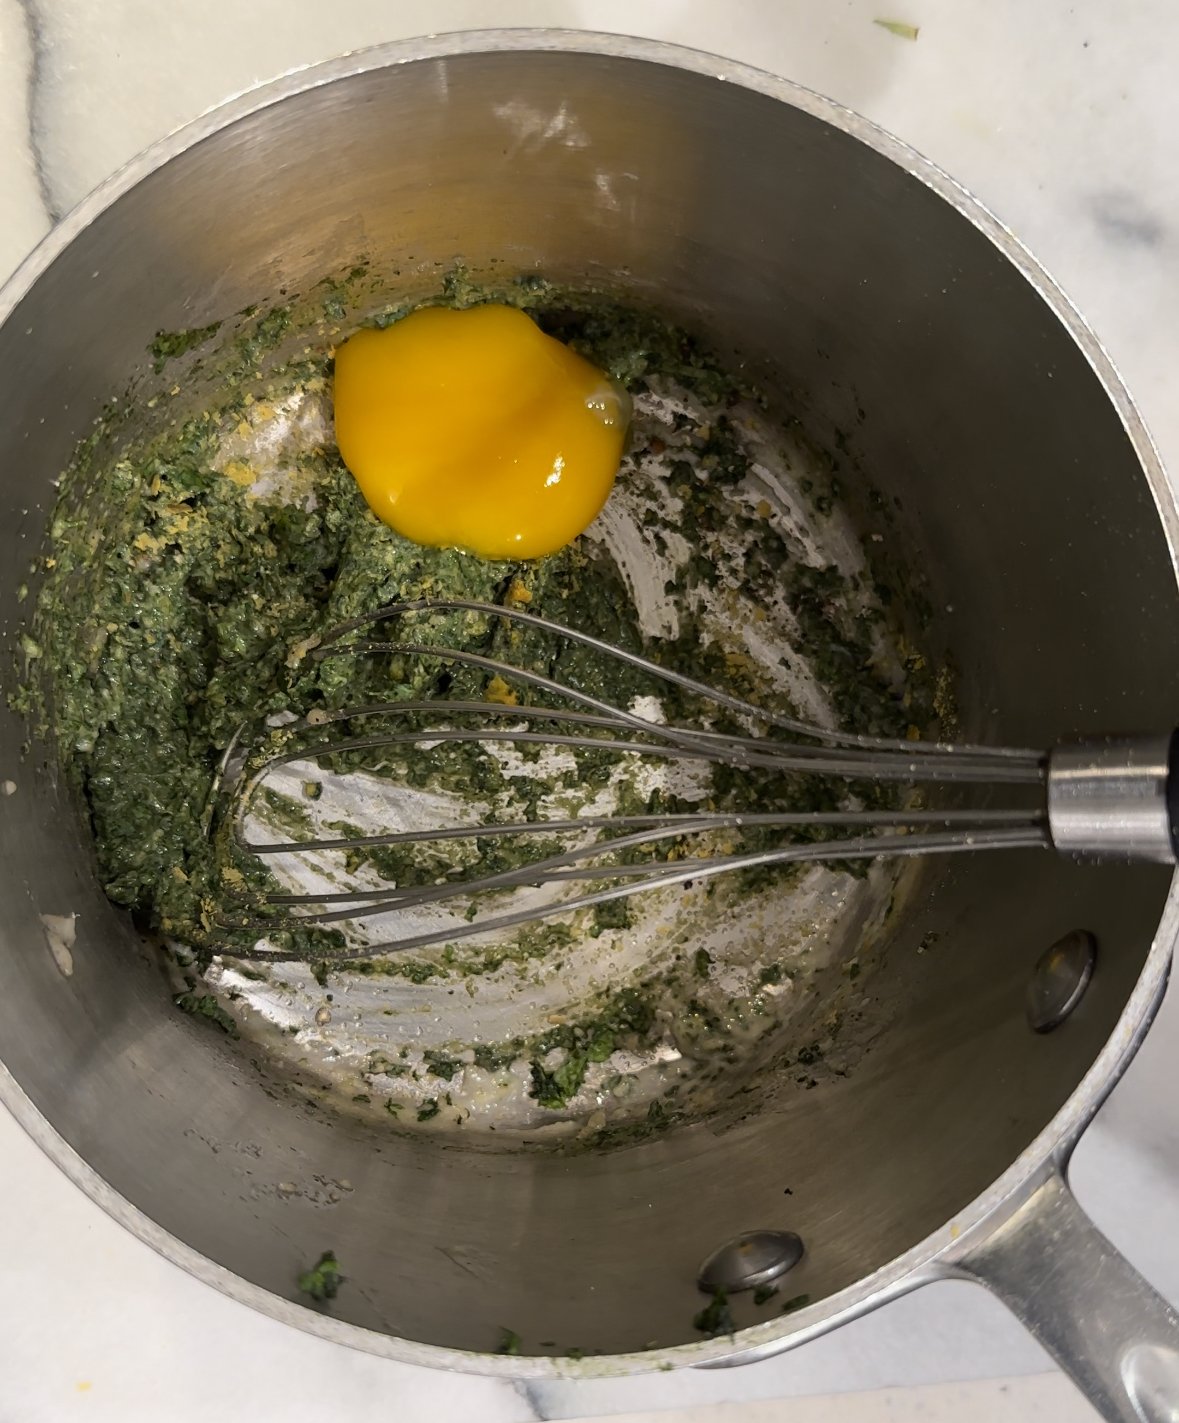 Stir in the yolk